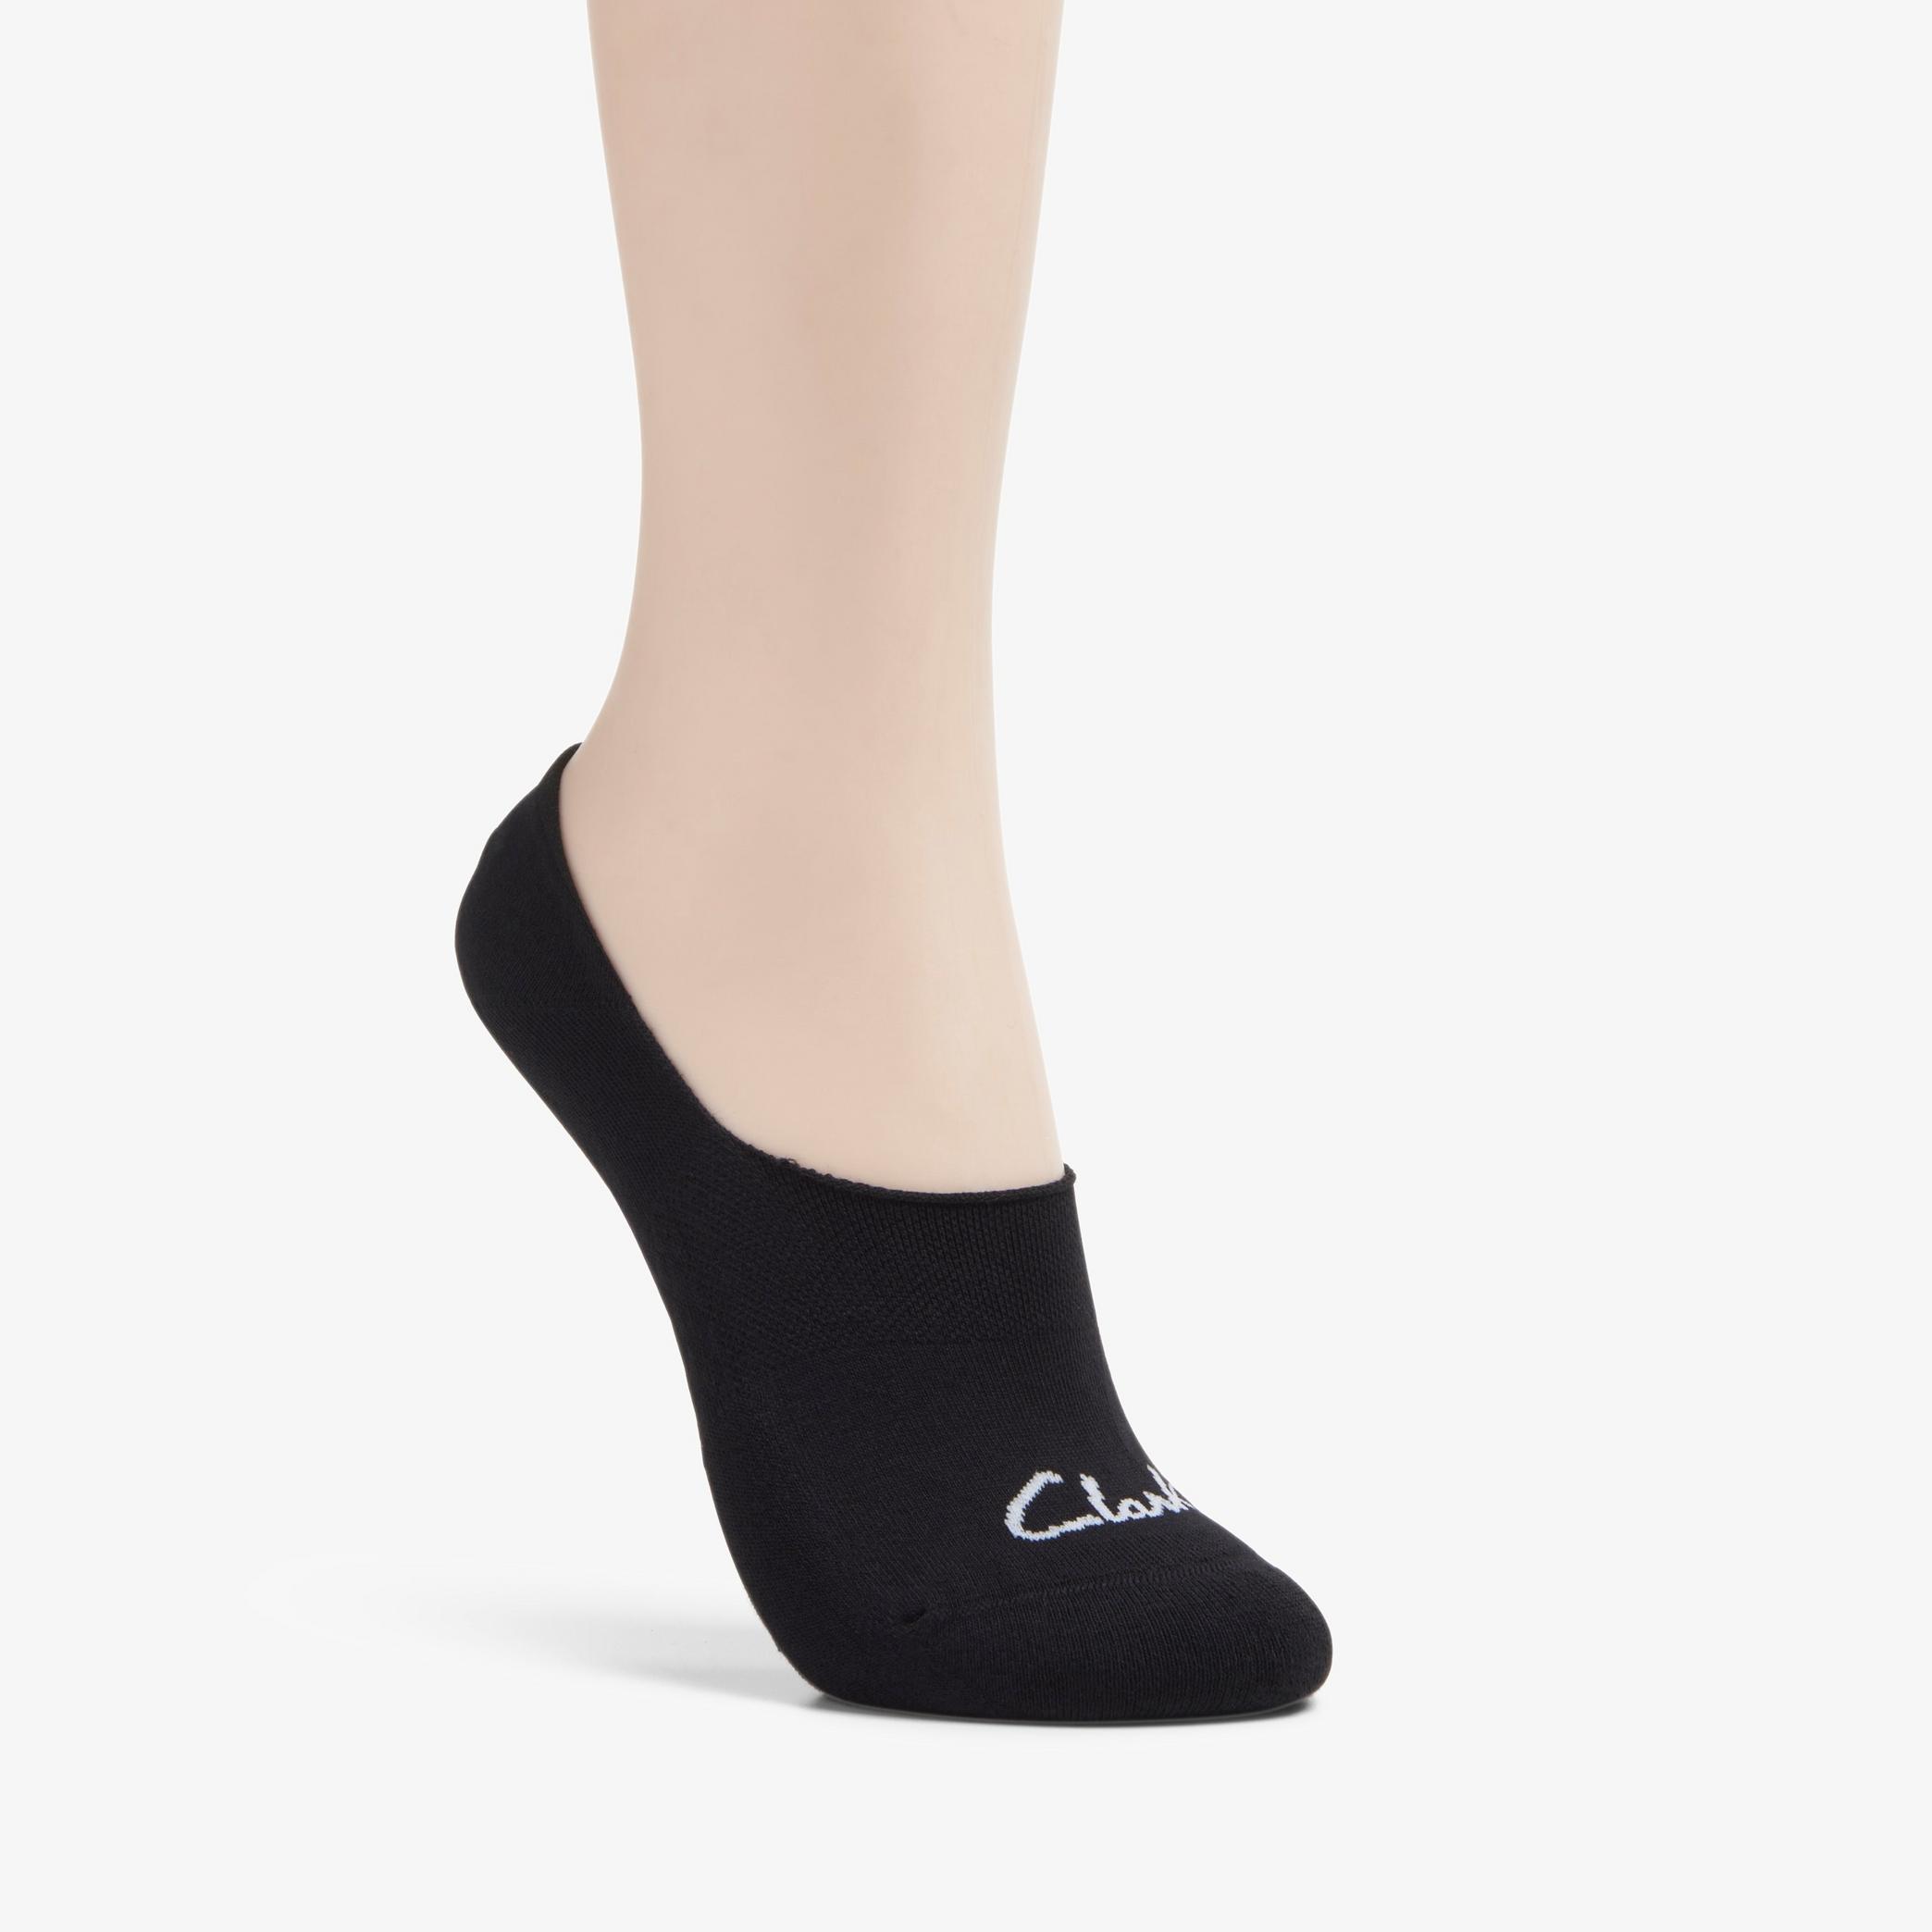 Basic Liner Black Socks, view 1 of 3